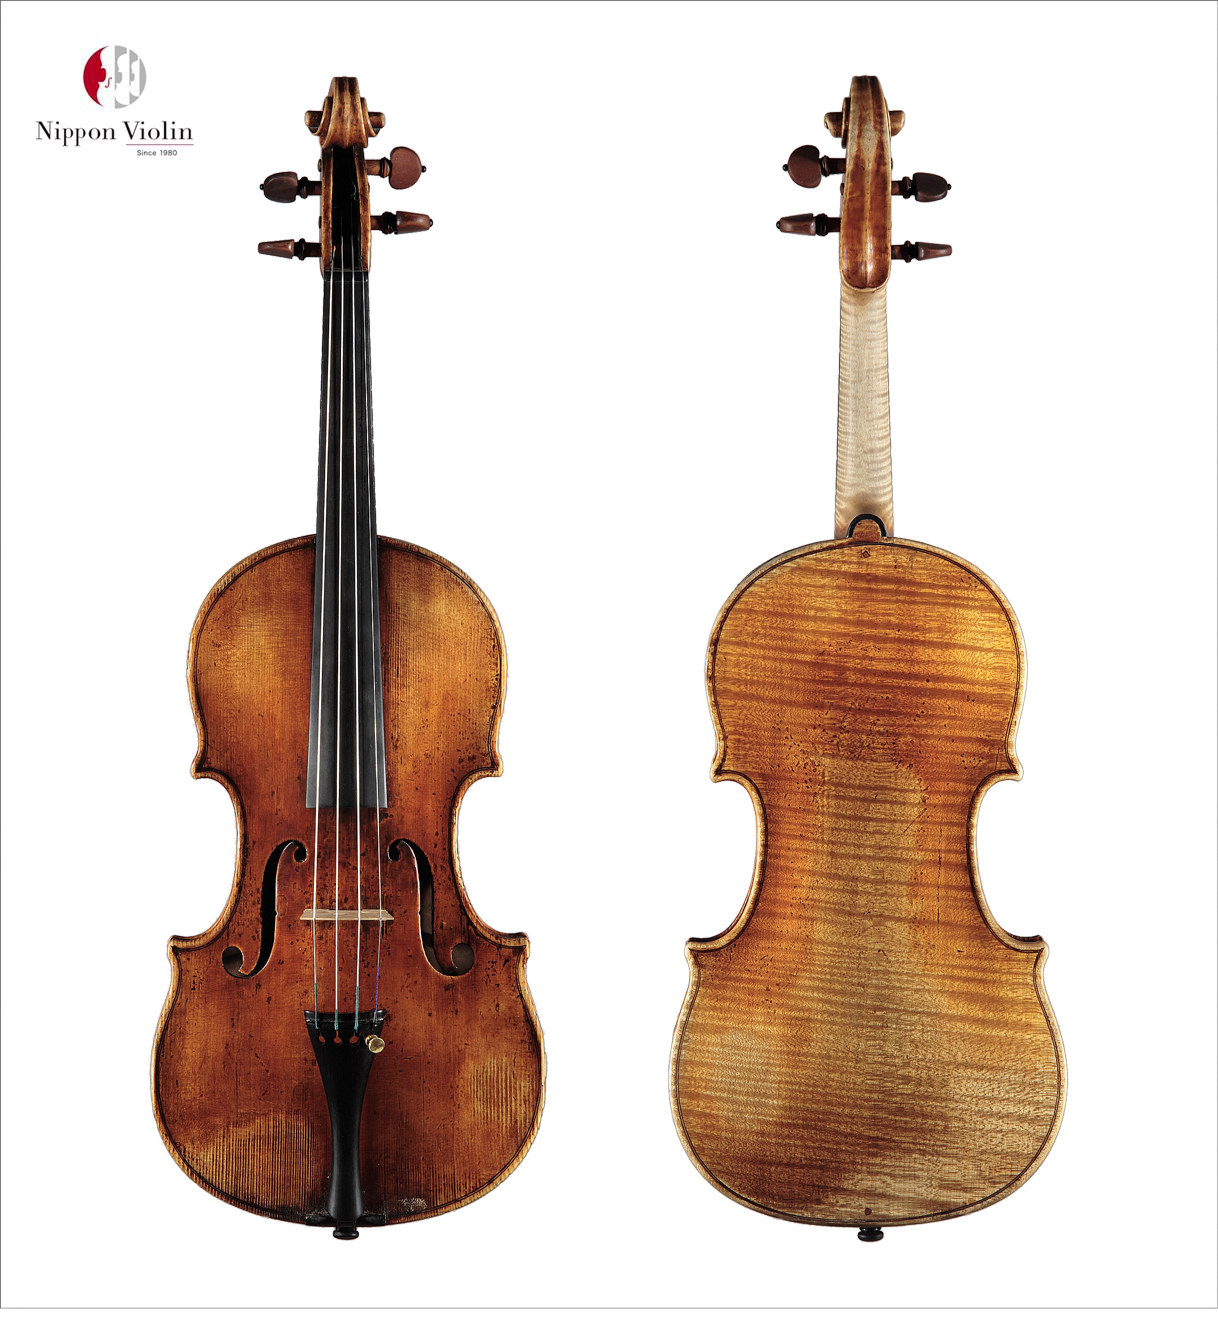 名器無償貸与企画・第2弾 － ヴァイオリン名器 (Giovanni Battista Guadagnini 1753年製)を無償で貸与致します。